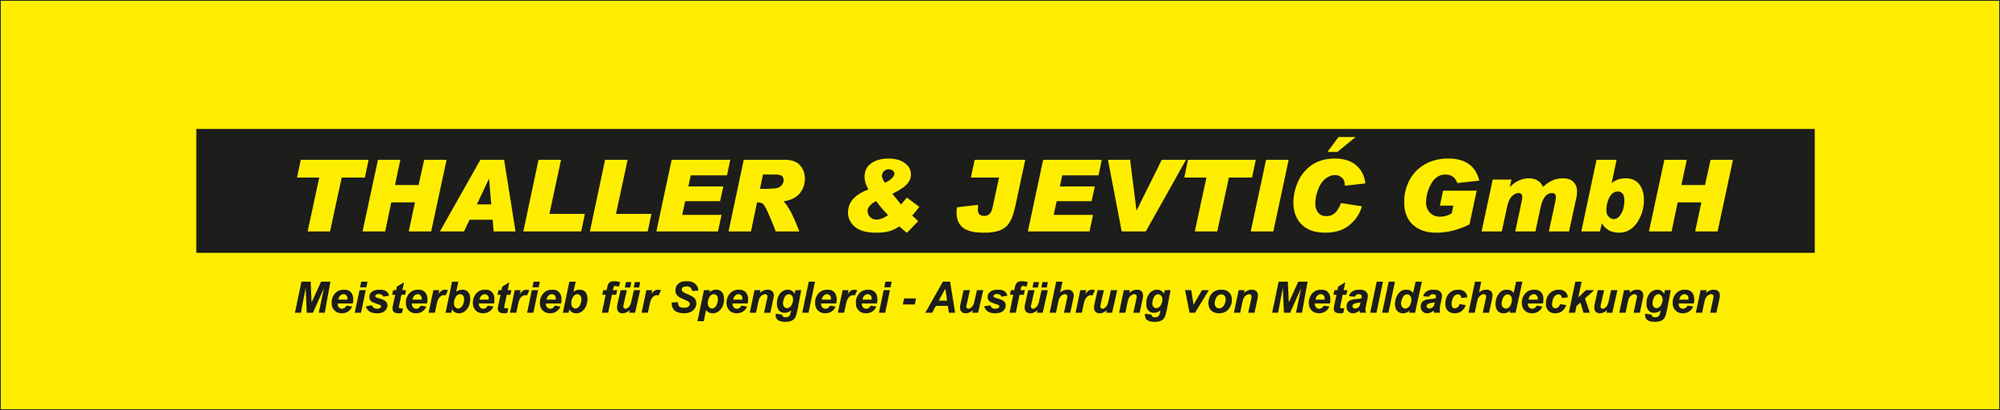 Logo der Thaller & Jevtic GmbH